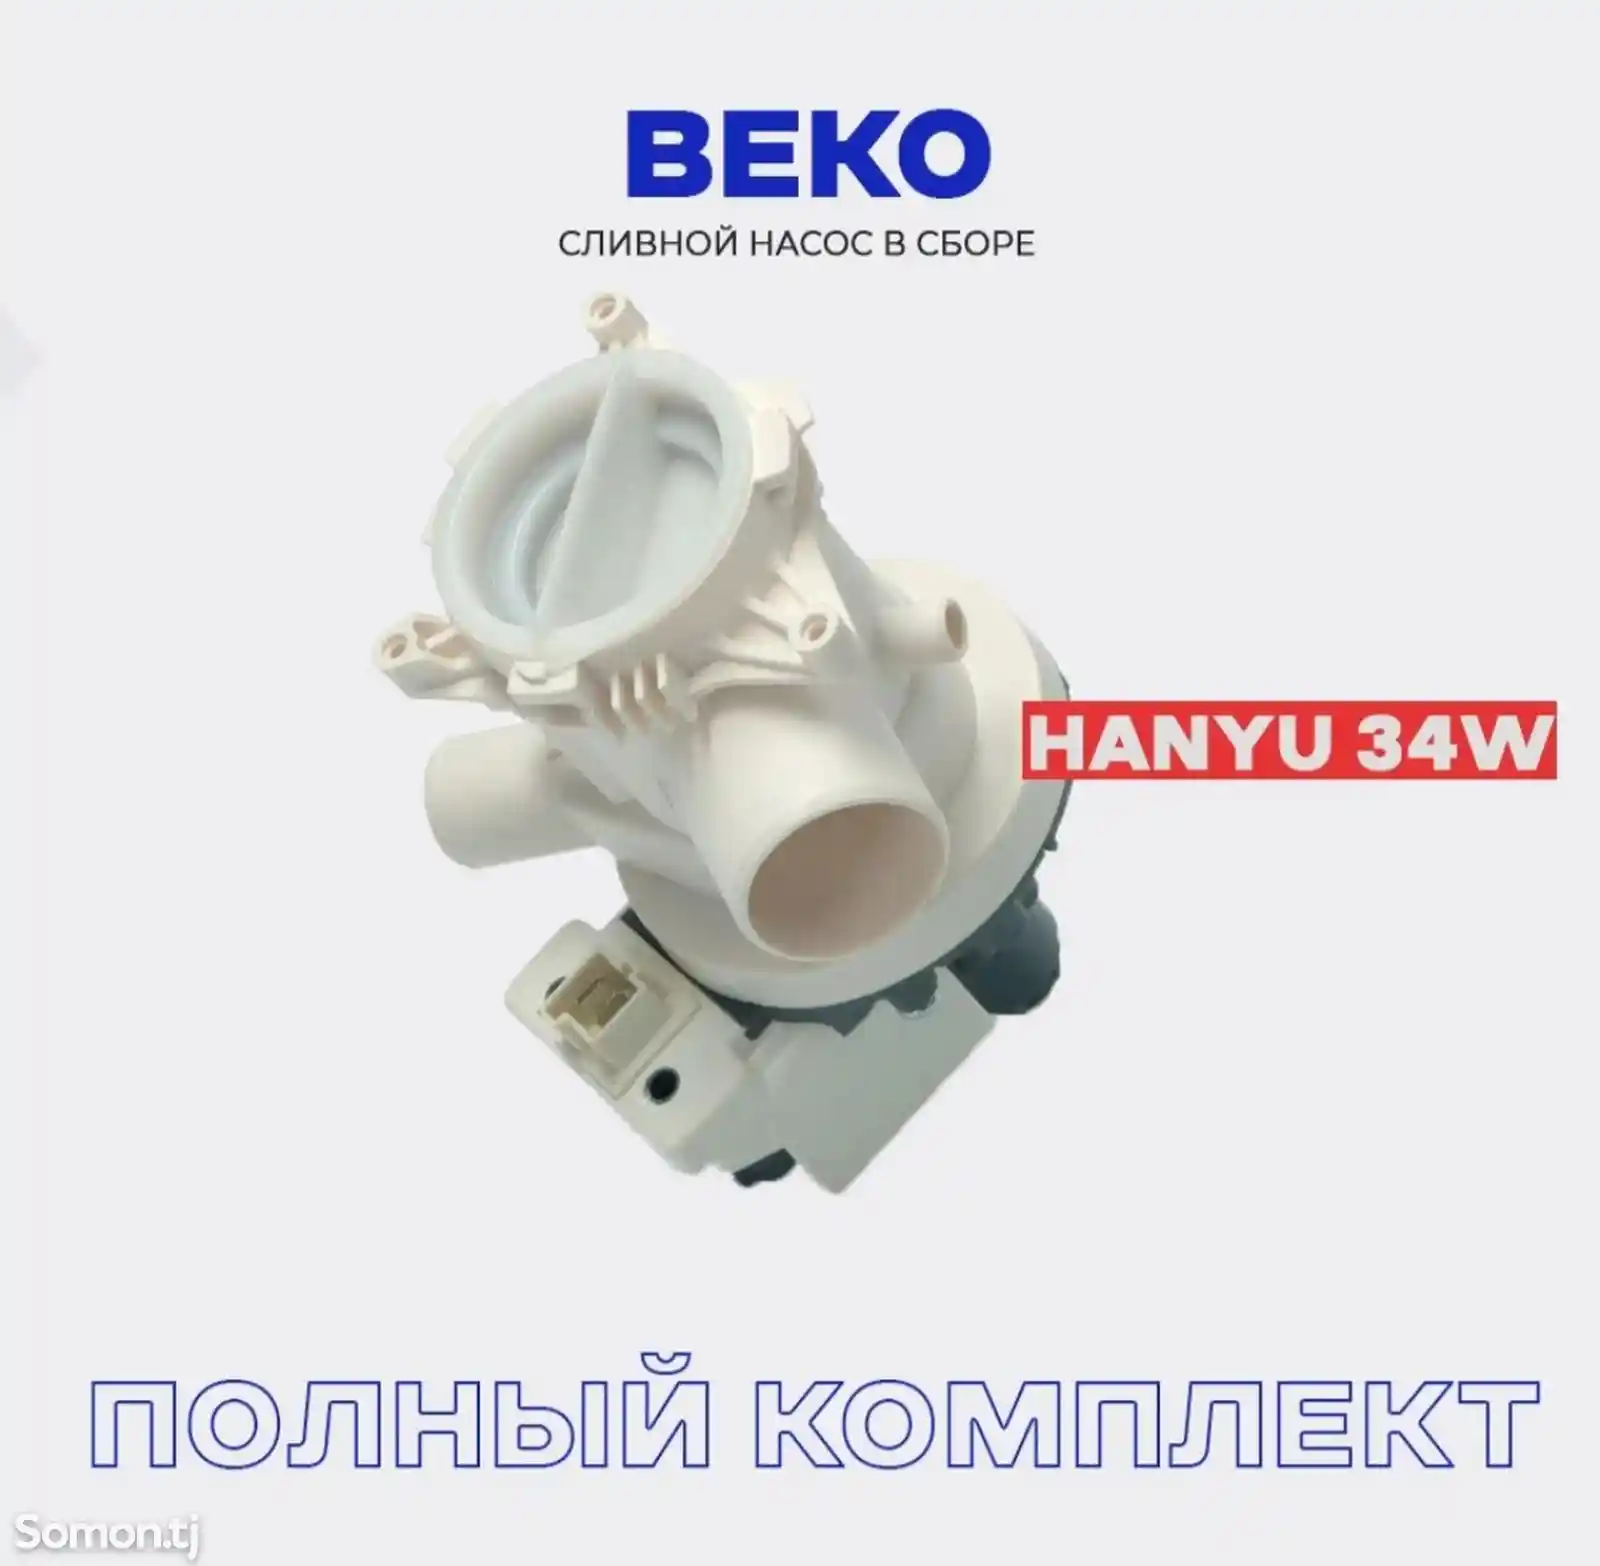 Сливной насос стиральной машины BEKO LAMONA HANYU в сборе с улиткой-1